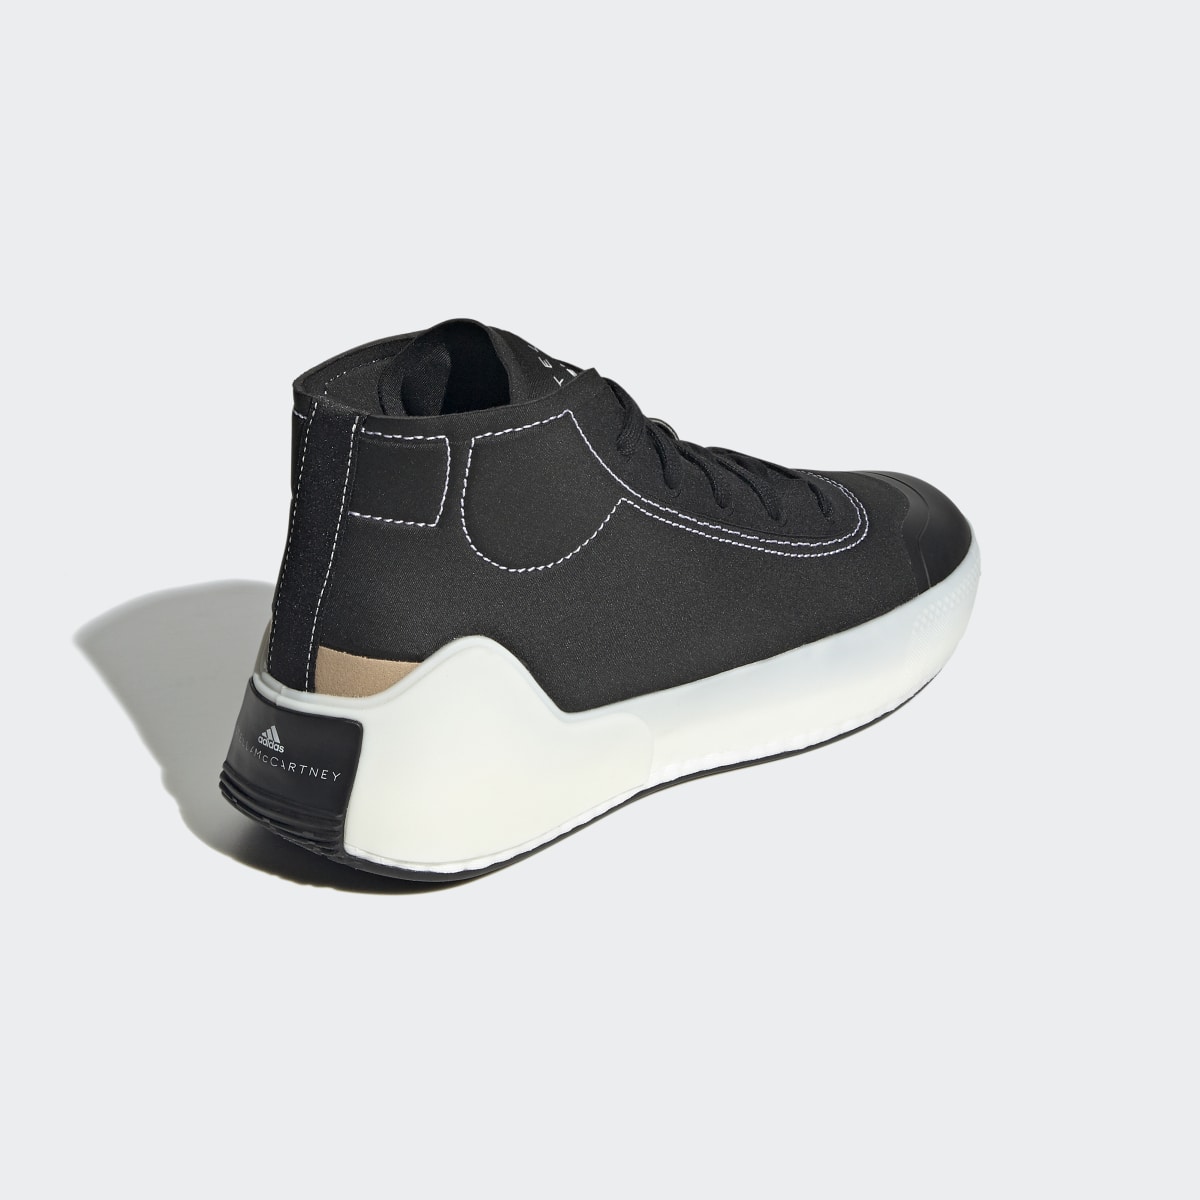 Adidas by Stella McCartney Treino Mid-Cut Shoes. 19